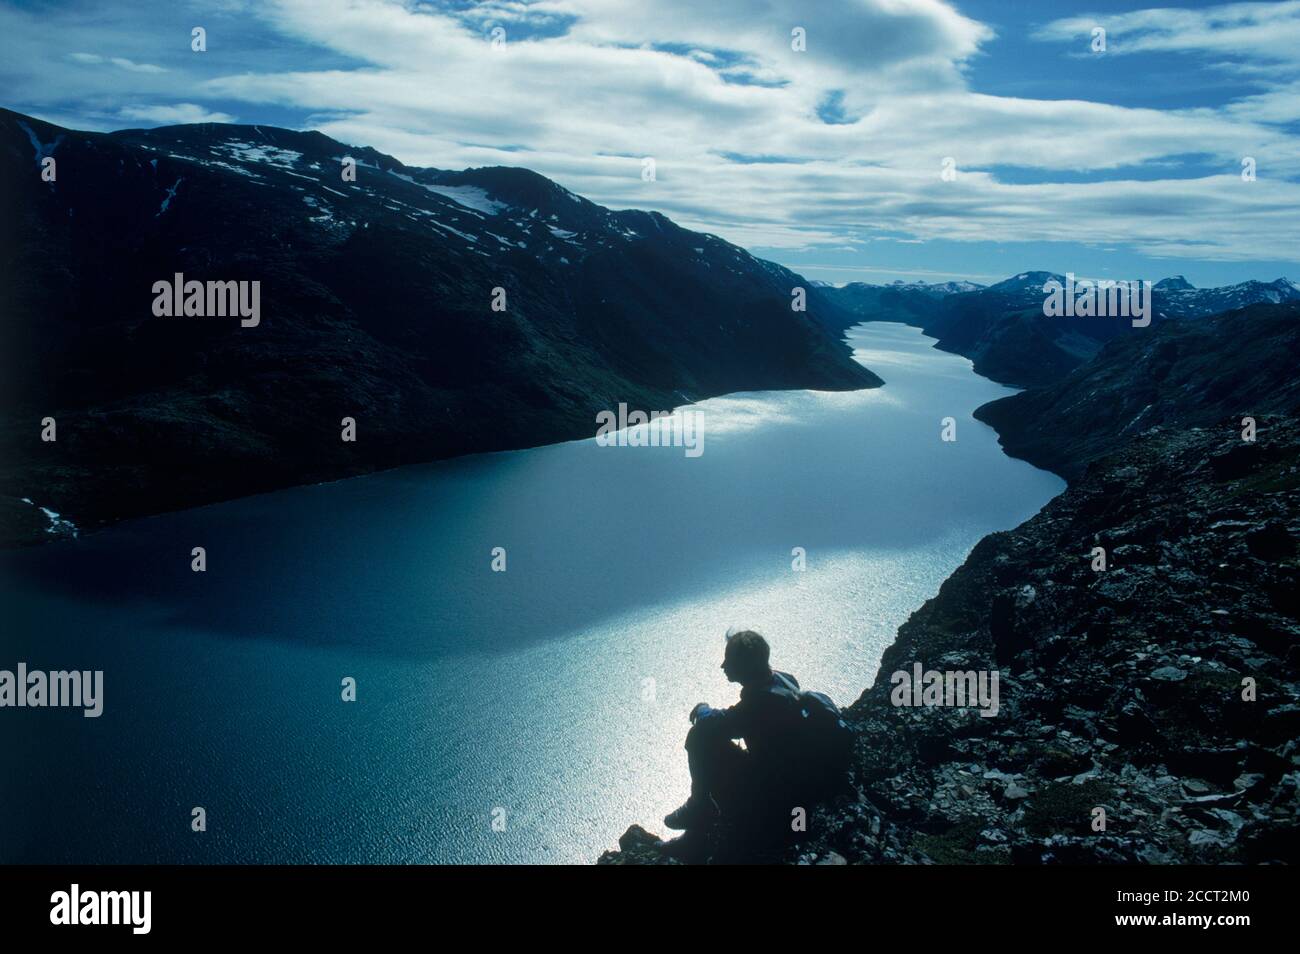 Hiker sitting above Gjende (or Gjendin) Lake in the Jotunheimen mountains in Norway's Jotunheimen National Park Stock Photo